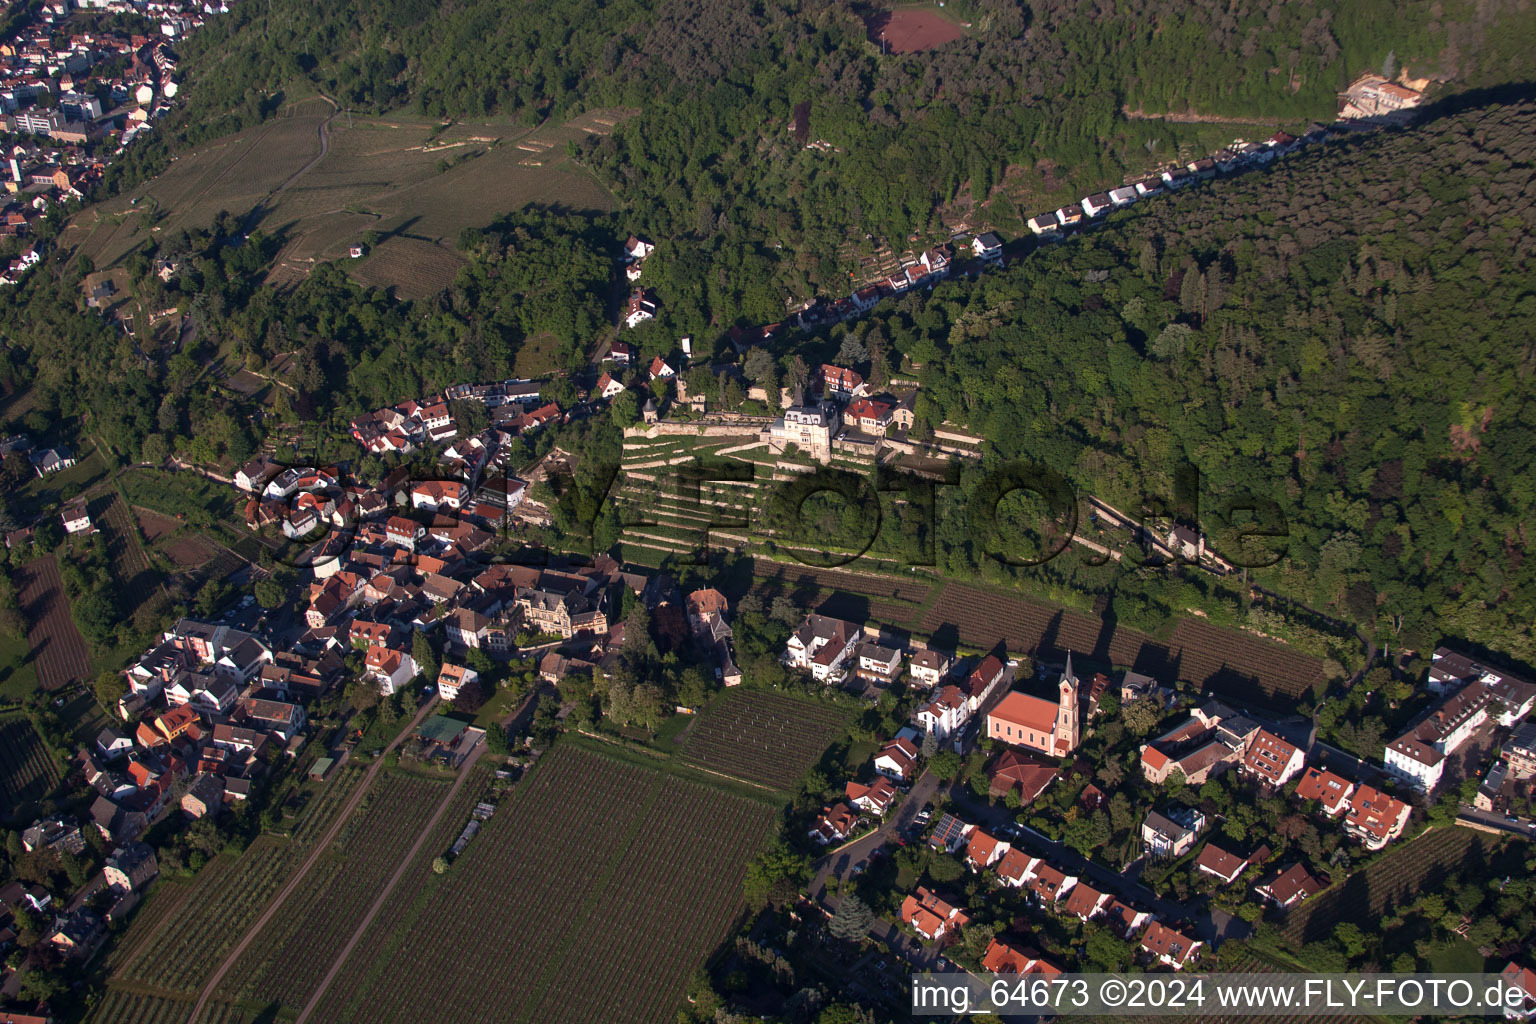 Luftbild von Dorf - Ansicht am Rande von landwirtschaftlichen Feldern und Nutzflächen in Haardt an der Weinstraße in Neustadt an der Weinstraße im Bundesland Rheinland-Pfalz, Deutschland